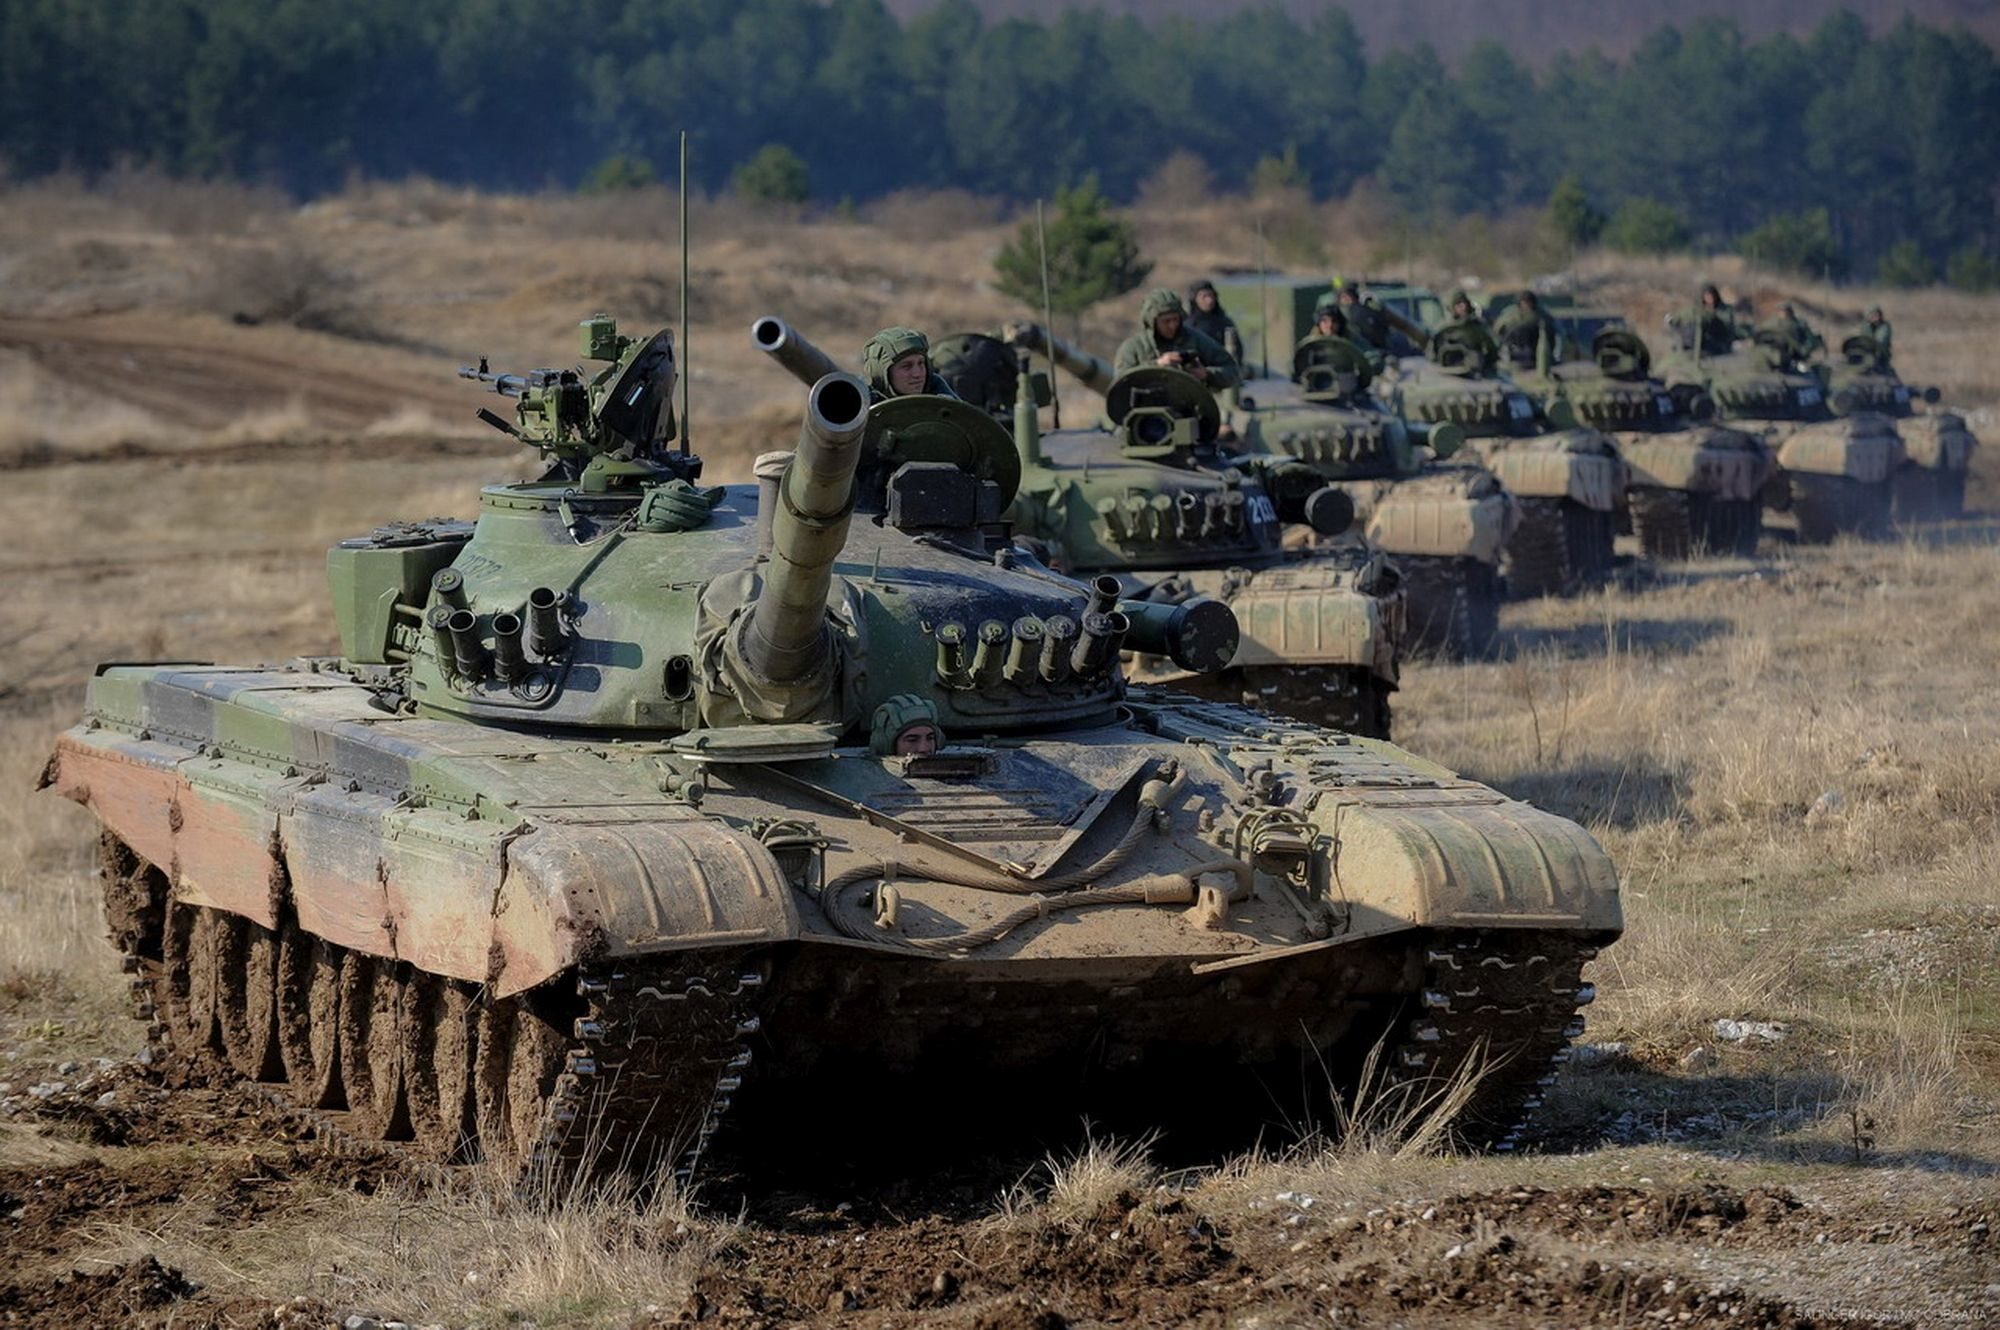 Ćwiczenia taktyczne serbskich wojsk